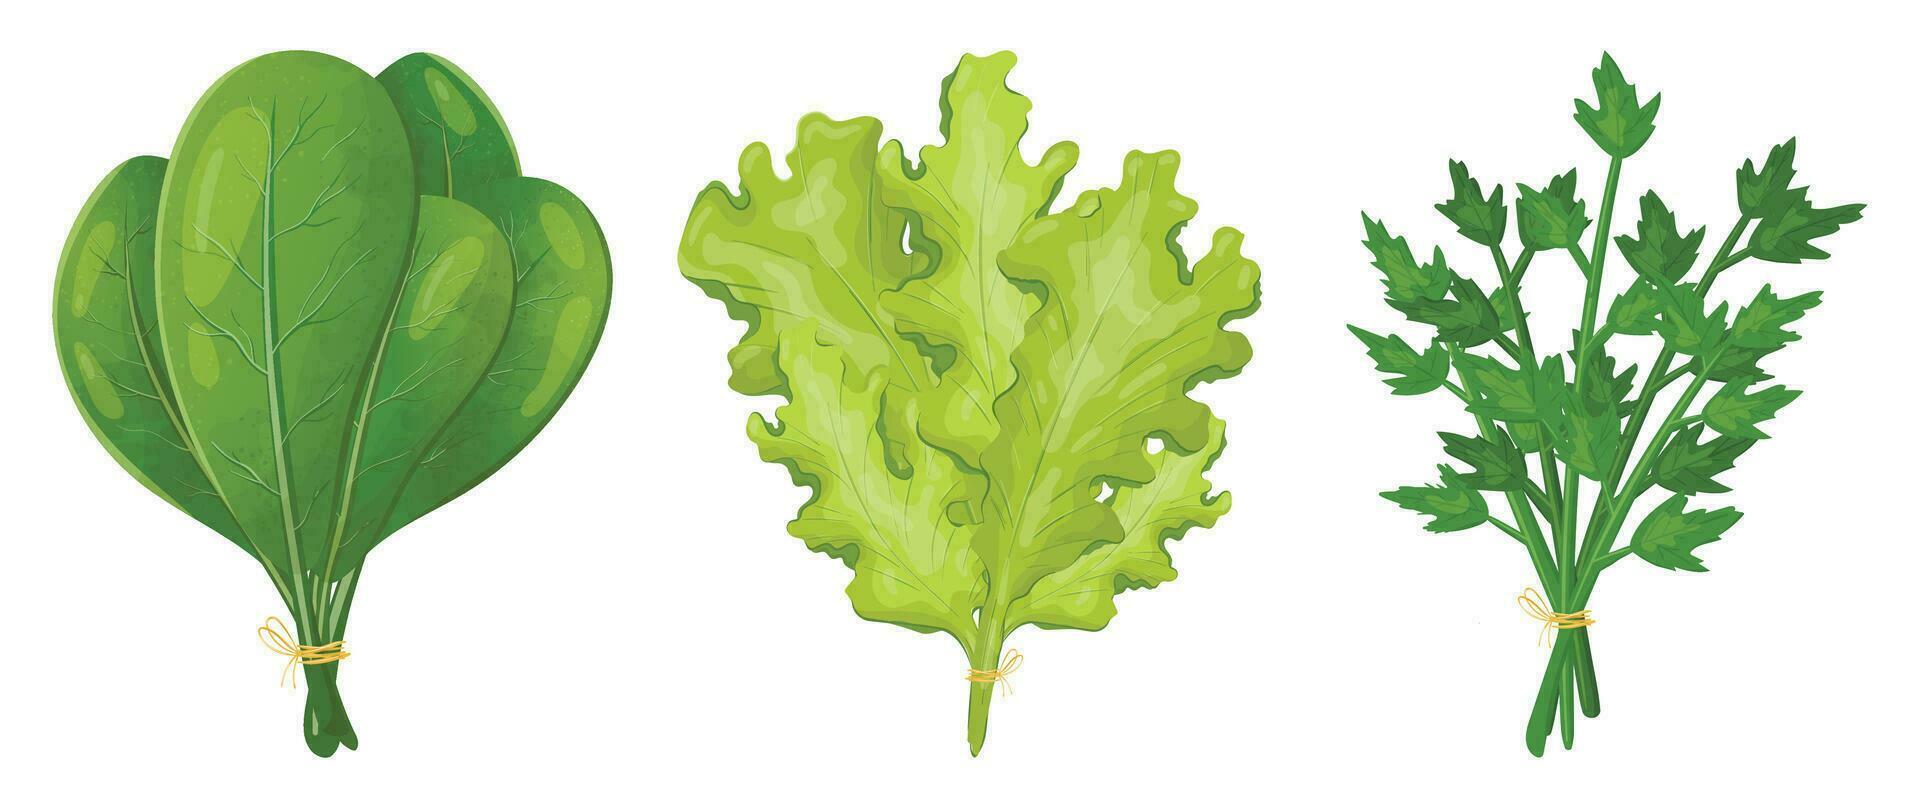 uppsättning av vektor realistisk bilder av buntar av grönt för sallad. spenat, sallad och persilja löv. naturlig örter som dekoration element eller mat krydda.